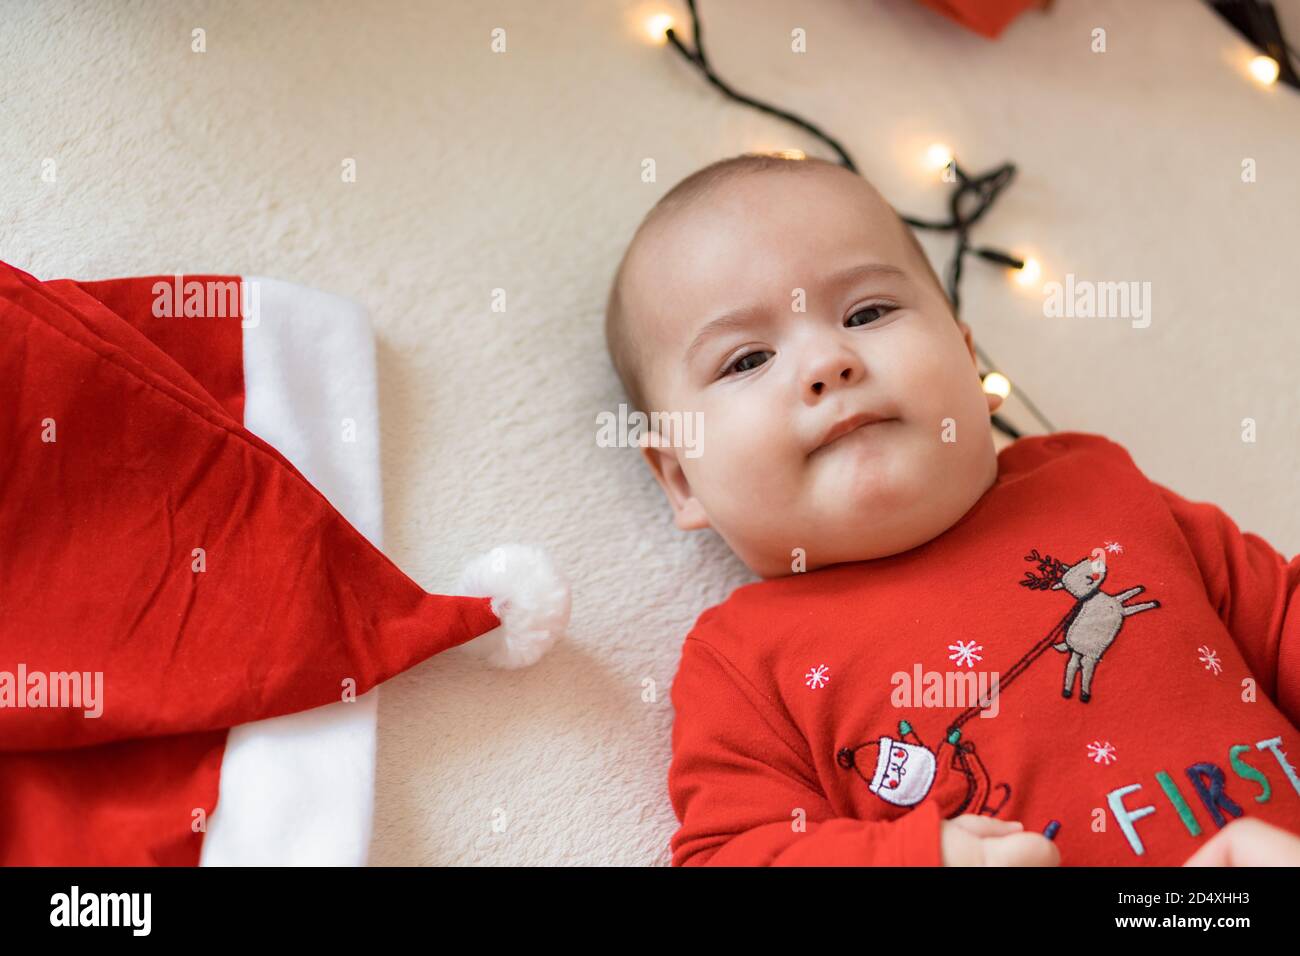 frohe weihnachten weihnachten und glückliches neues Jahr, Säuglinge, Kindheit, Urlaub Konzept - close-up 6 Monate altes neugeborenes Baby in roten Kleidern auf dem Bauch Stockfoto